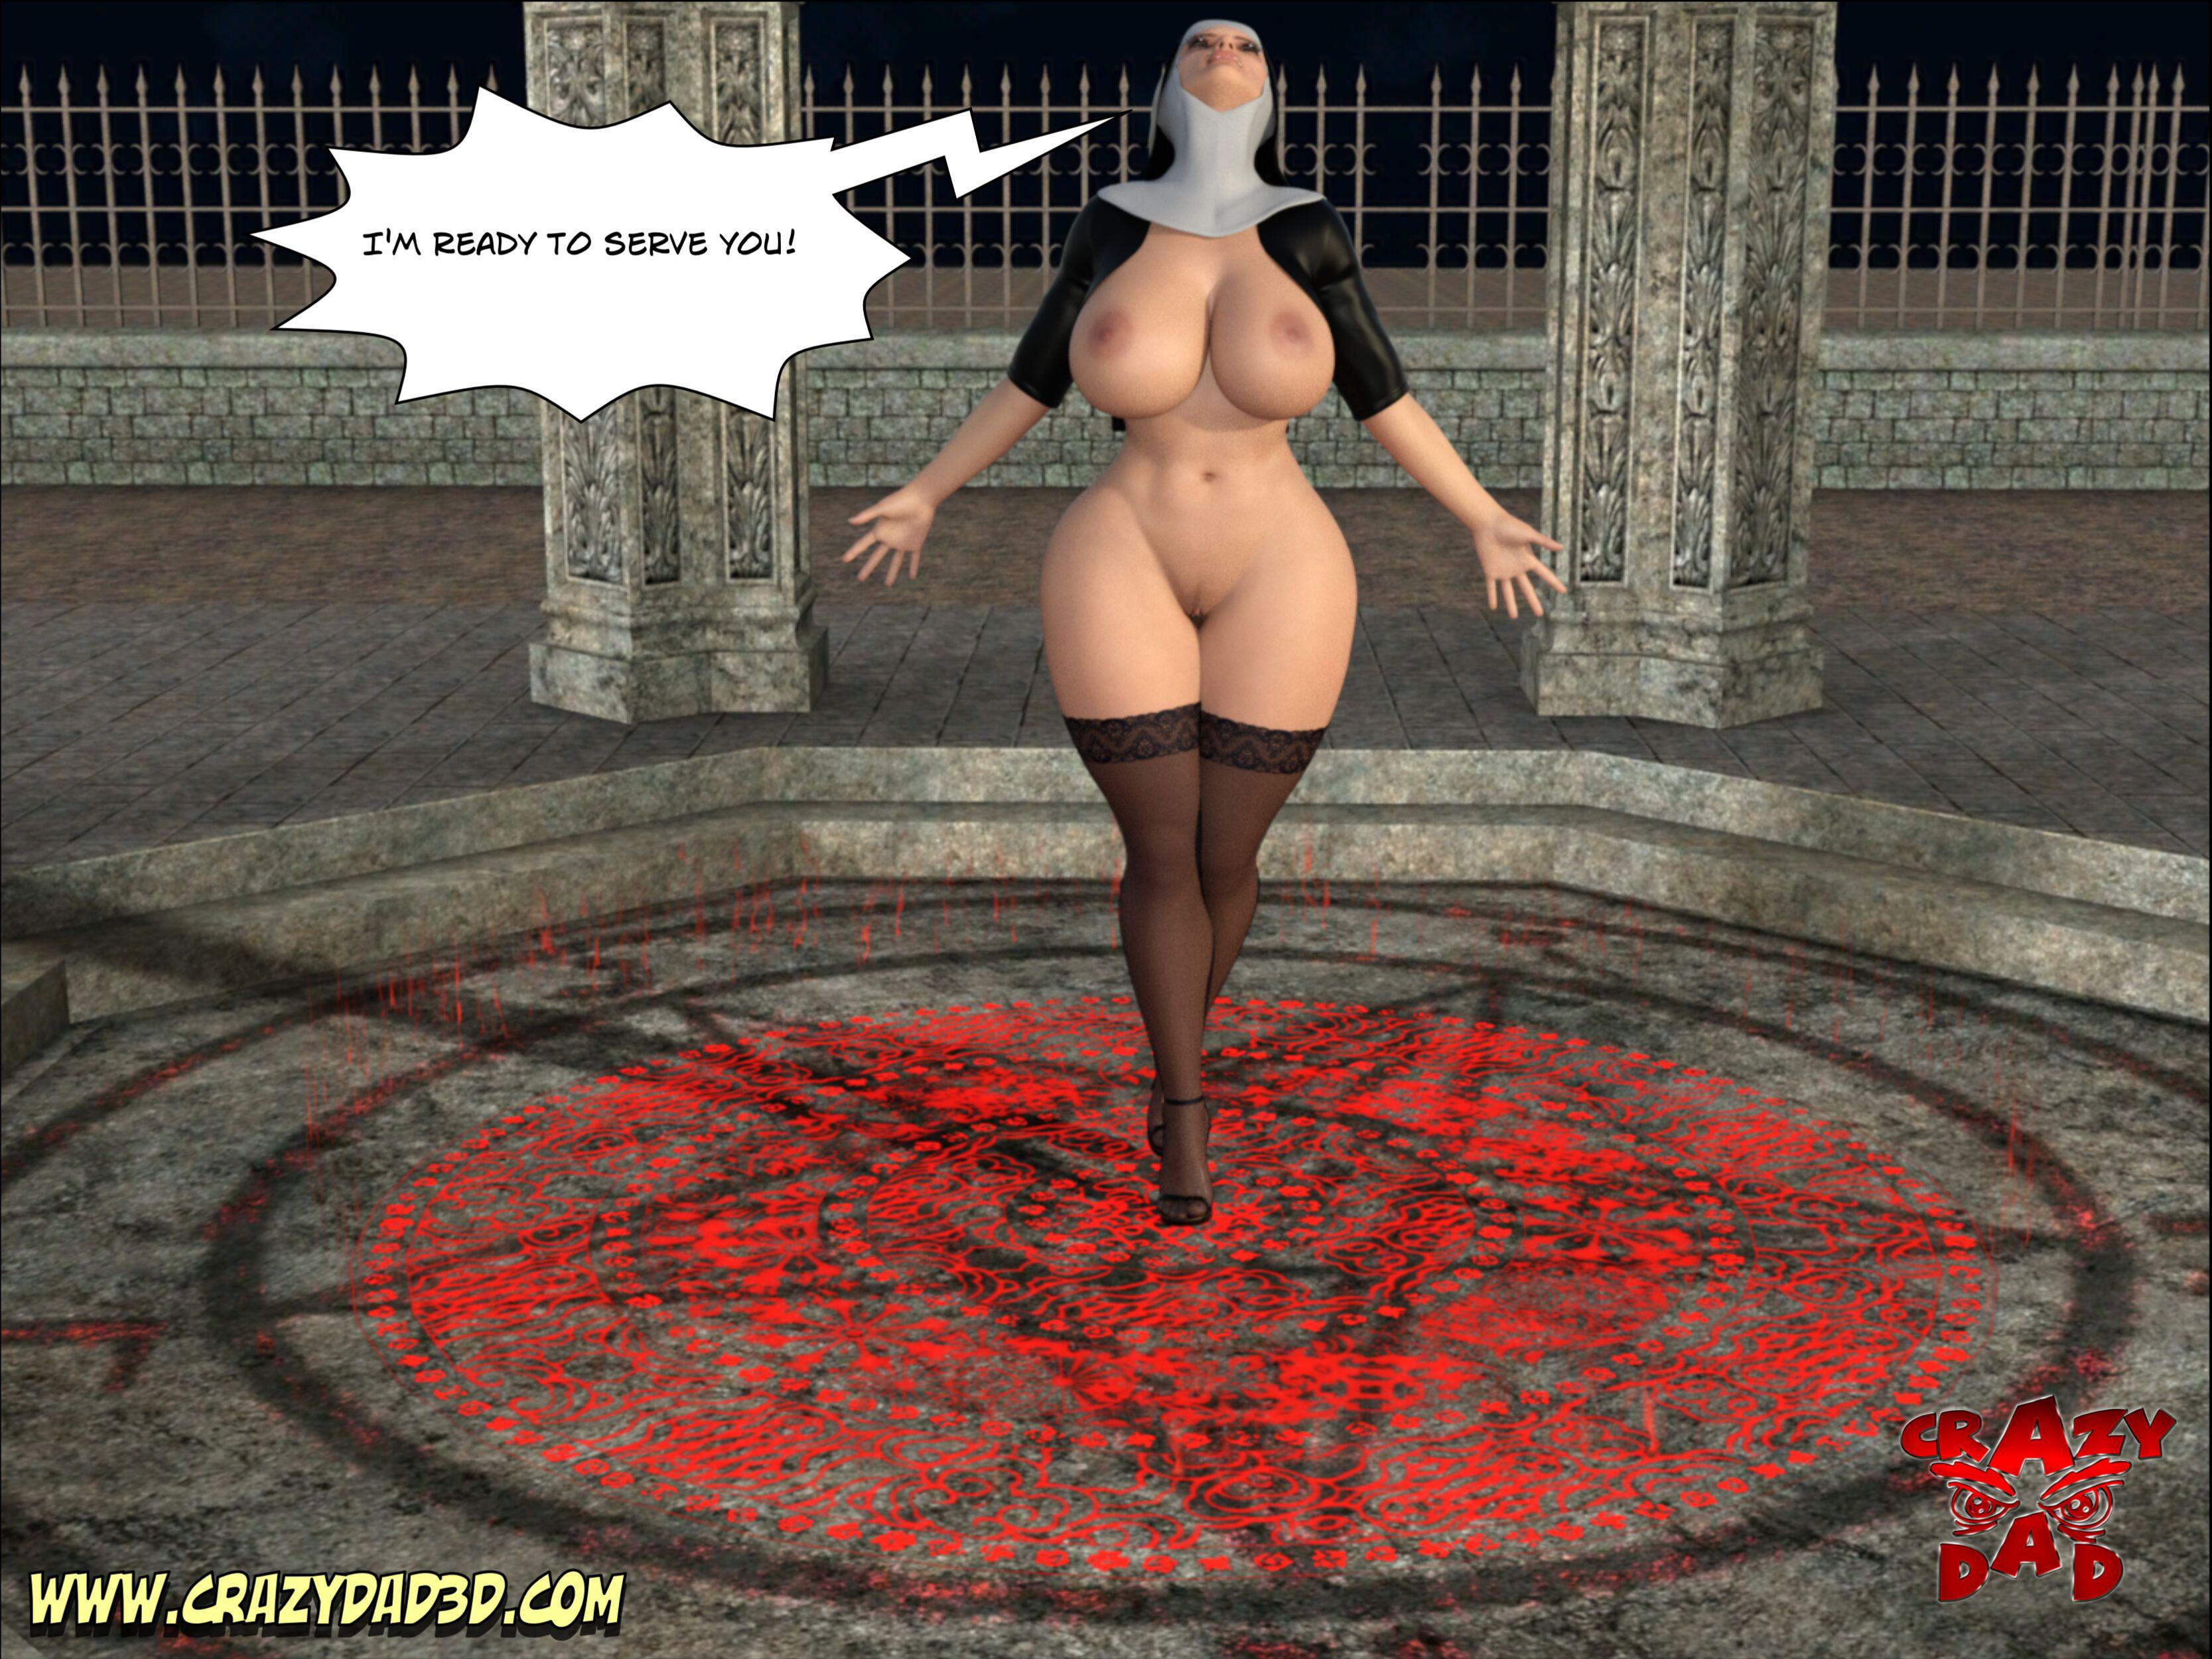 3334px x 2500px - CrazyDad3d - Evil Nun 1 | Porn Comics